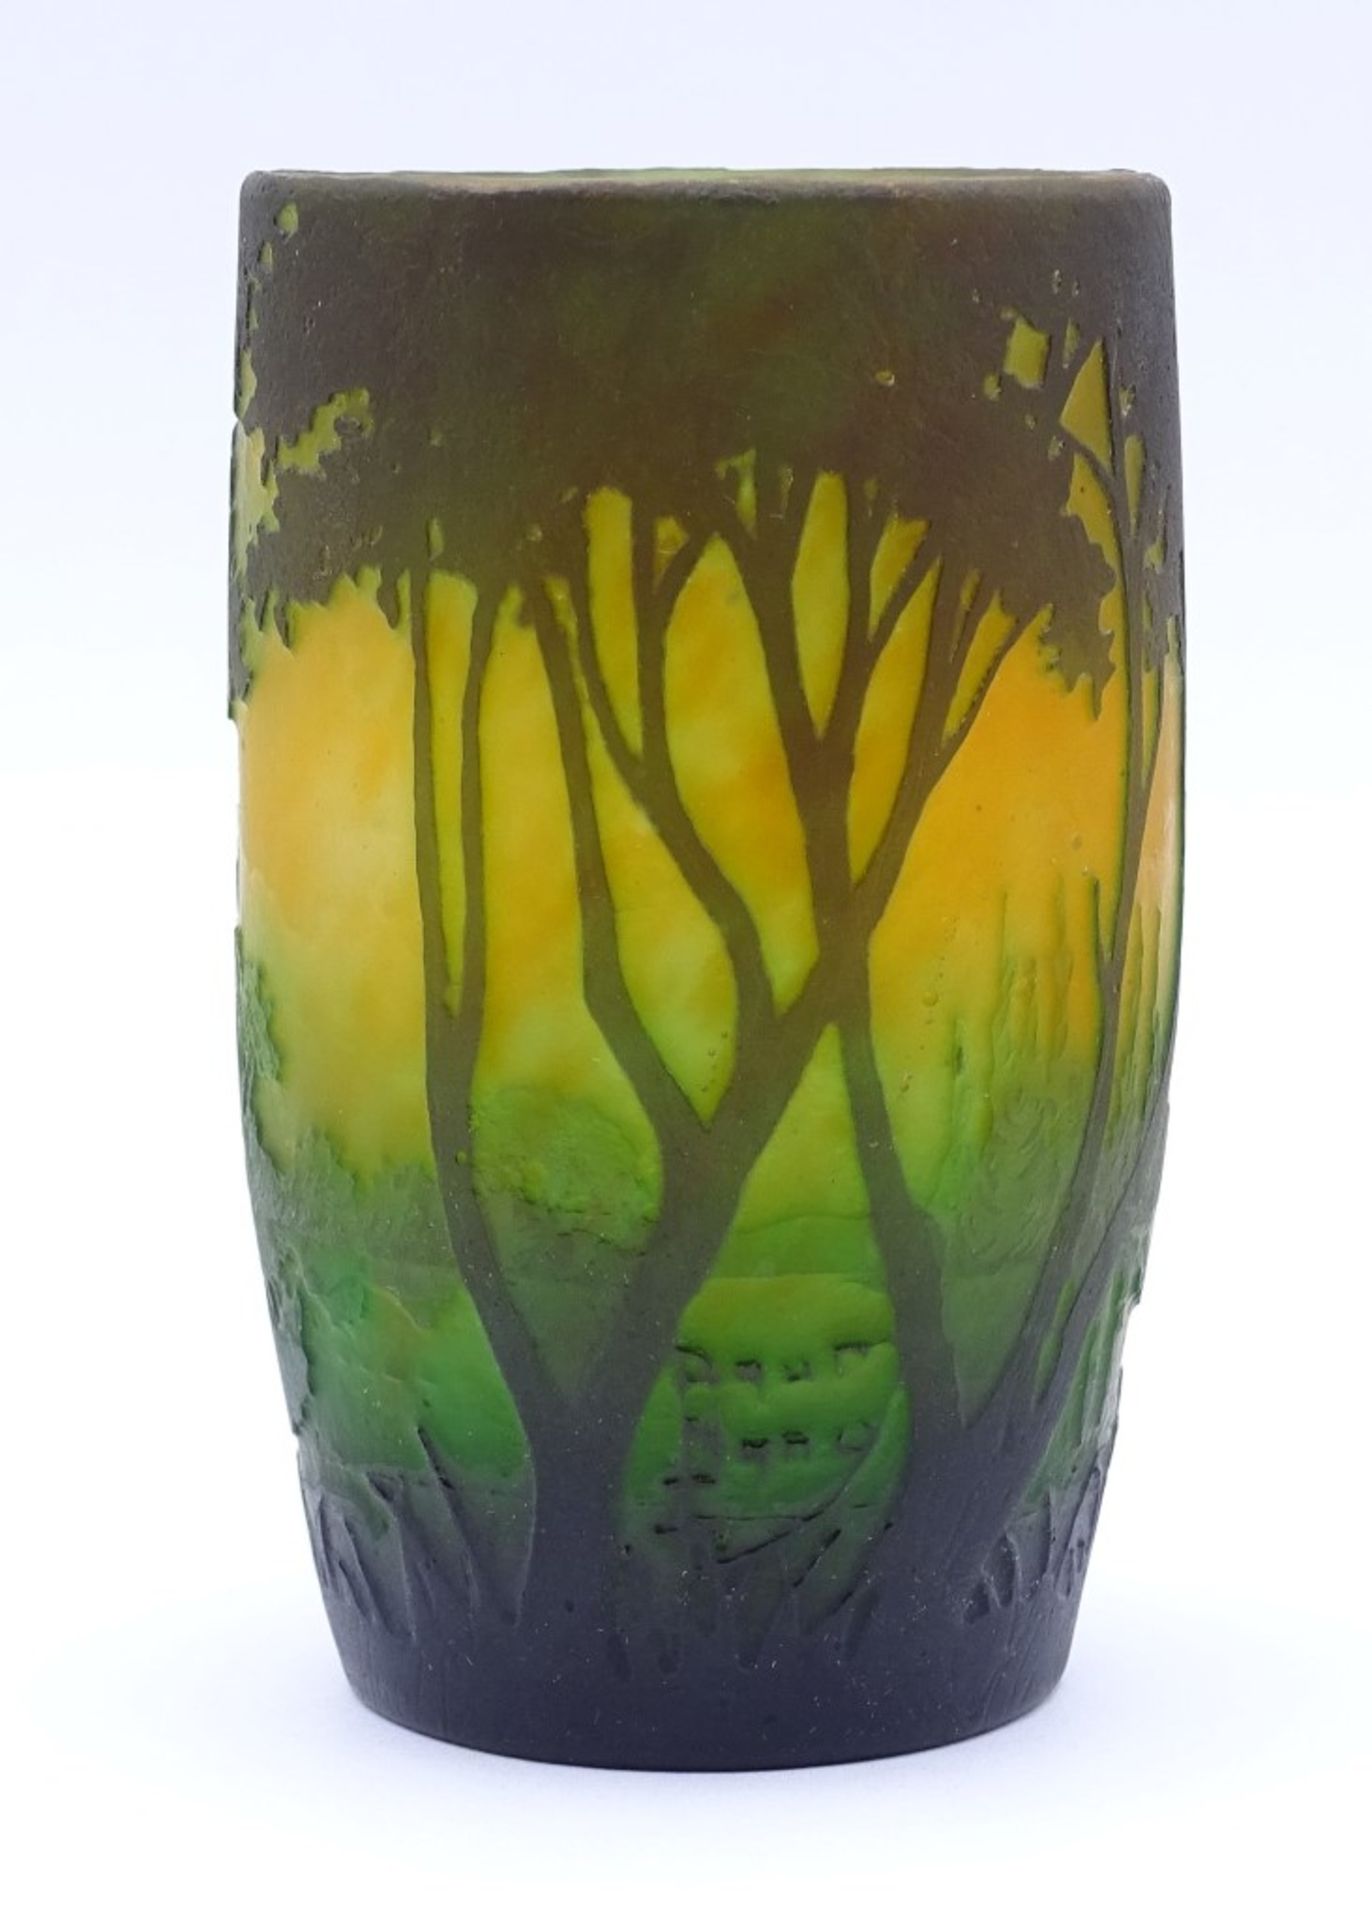 Daum-Nancy Vase mit Wasserlandschaft um 1900-1910,wiedergegebene Baummotive auf die Ufervegetation